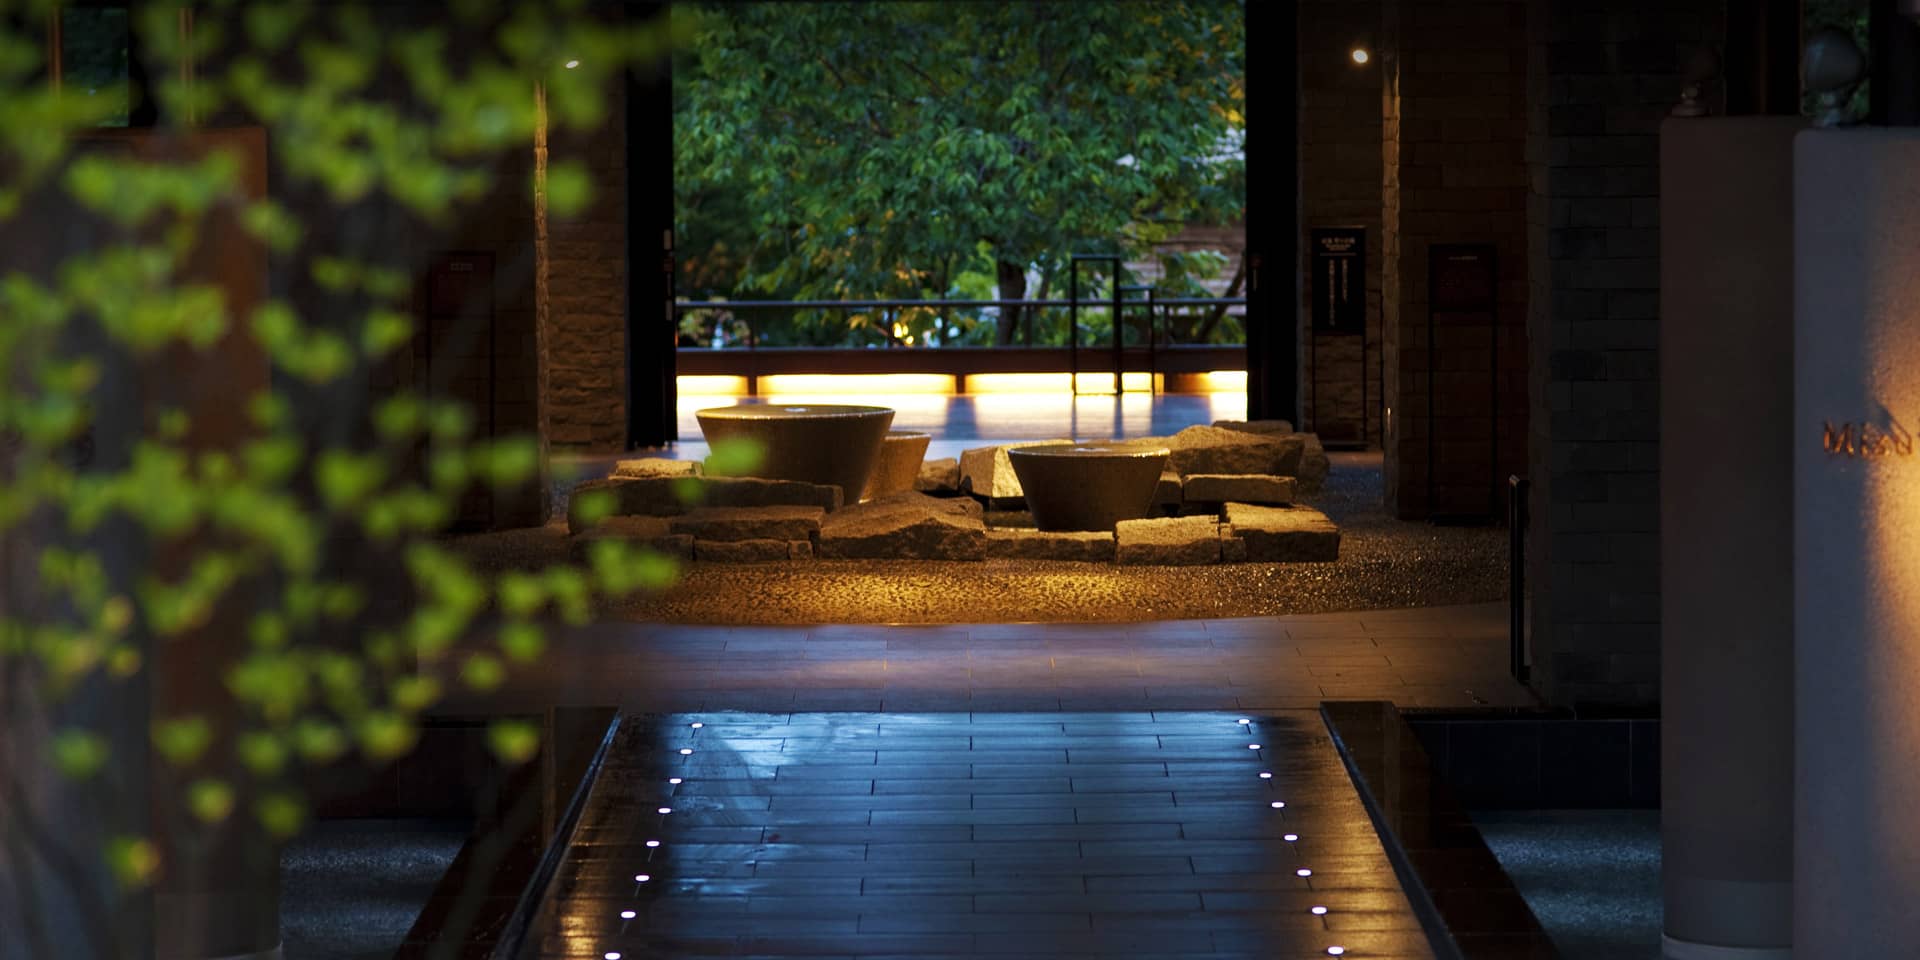 公式 しこつ湖 鶴雅リゾートスパ 水の謌 北海道温泉ホテル